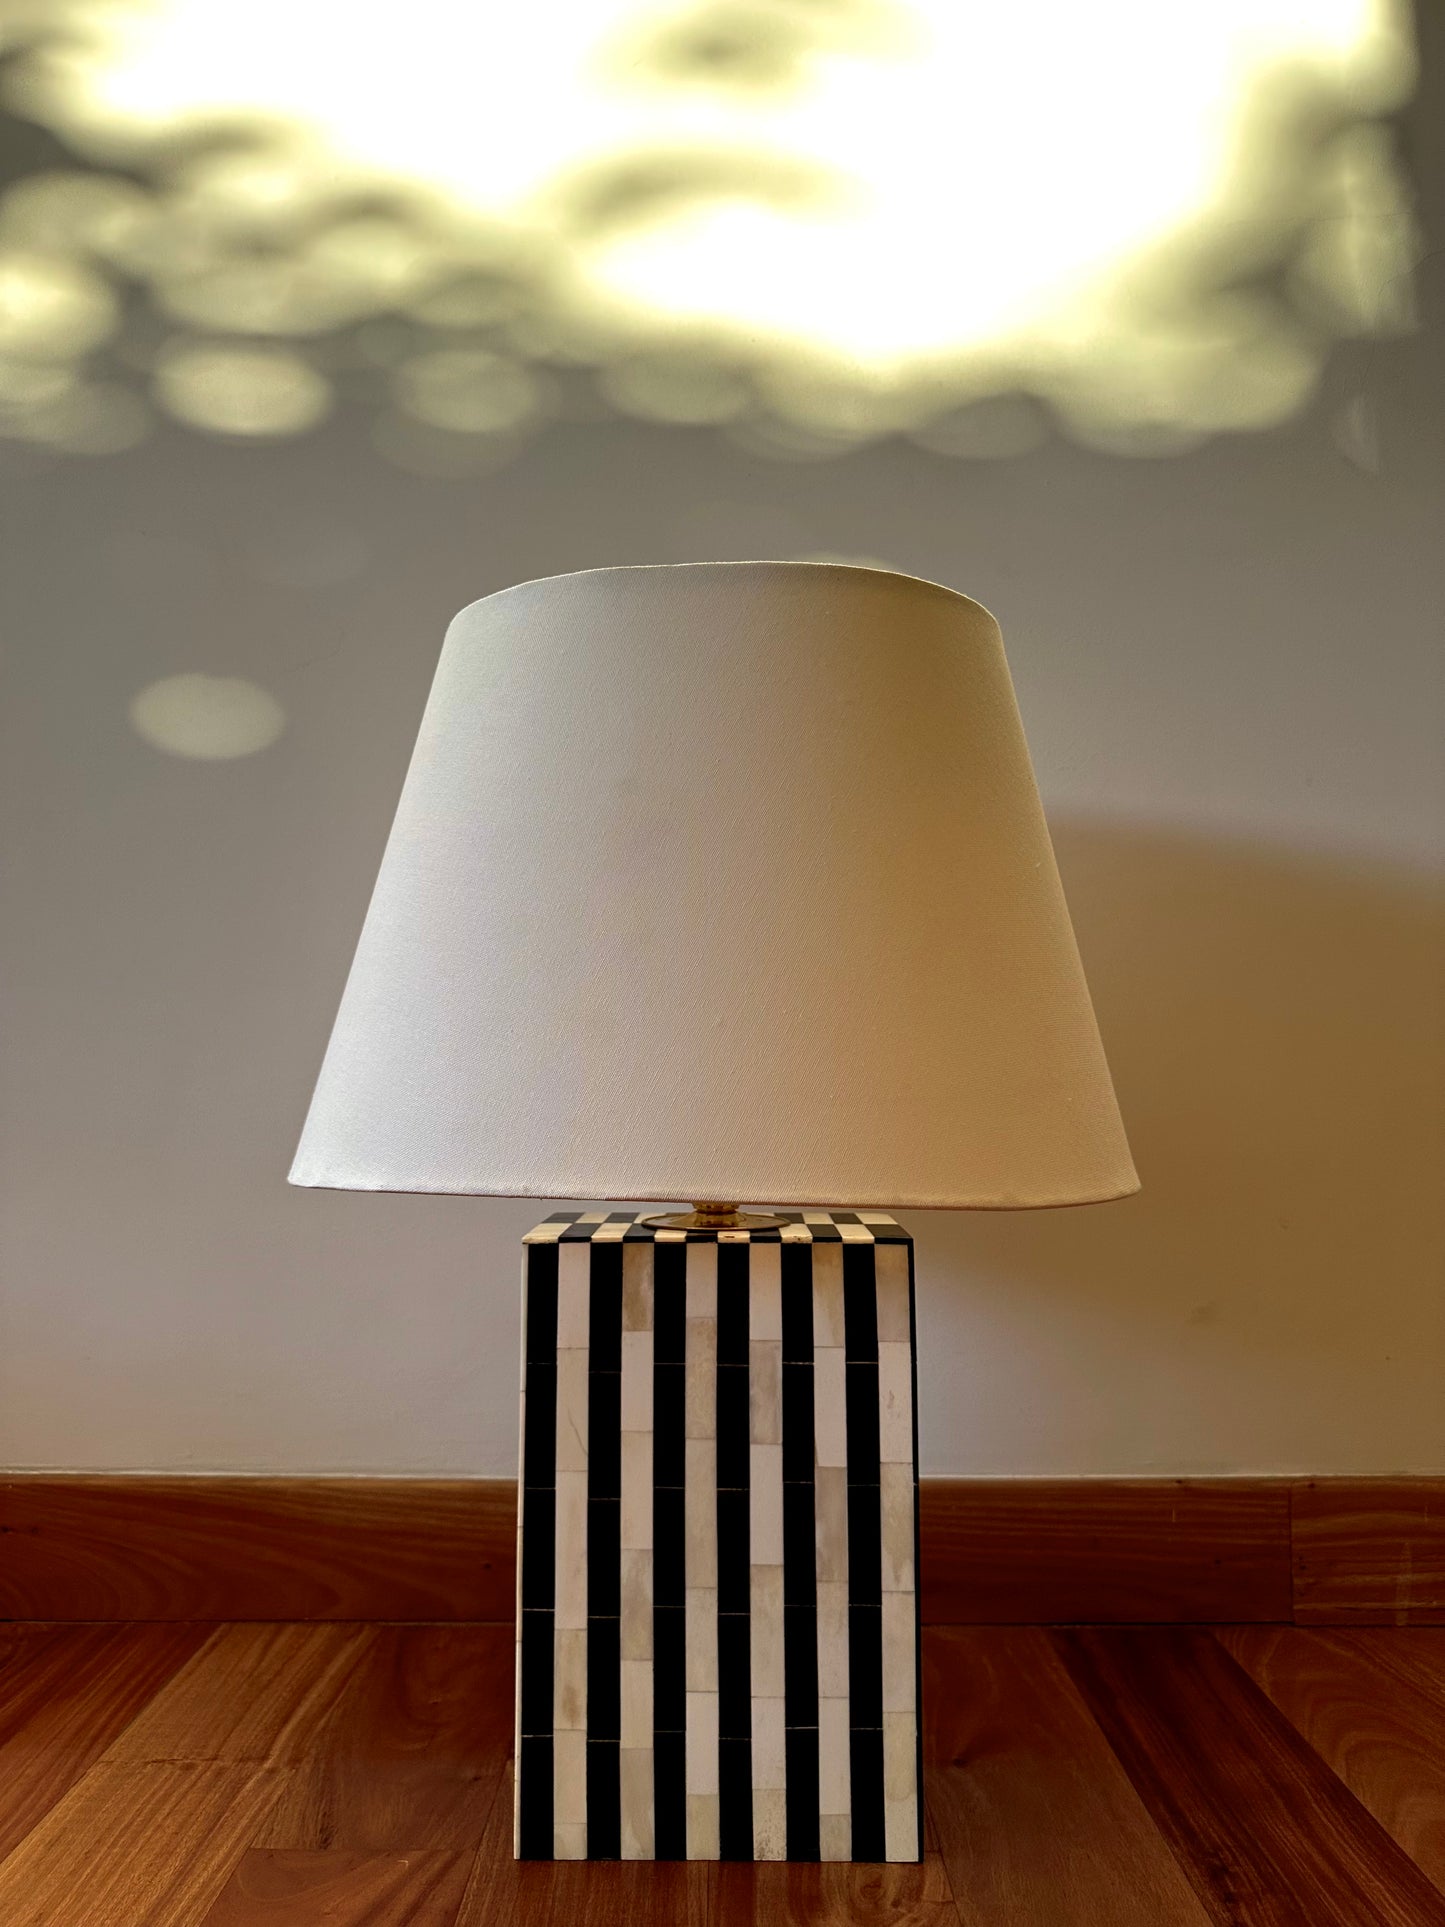 1970's-inspired Lamp in Bone